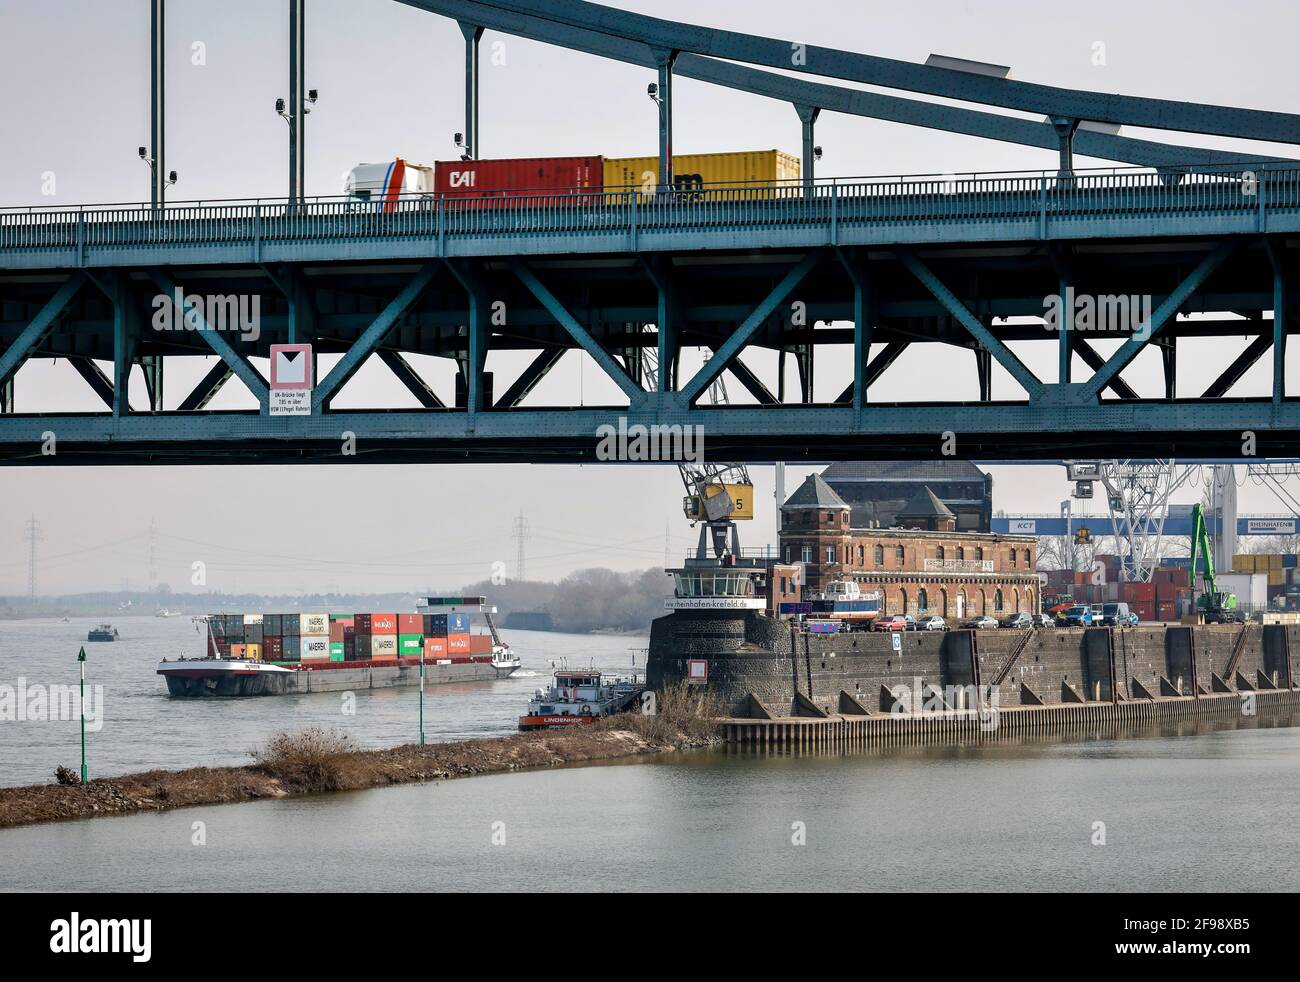 Krefeld, Rhénanie-du-Nord-Westphalie, Allemagne - le Rheinhafen Krefeld est le quatrième plus grand port de la Rhénanie-du-Nord-Westphalie, un bateau à conteneurs passe devant le terminal KCT Krefelder, devant un camion conduit sur le pont Krefeld-Uerdinger au-dessus du Rhin. Banque D'Images